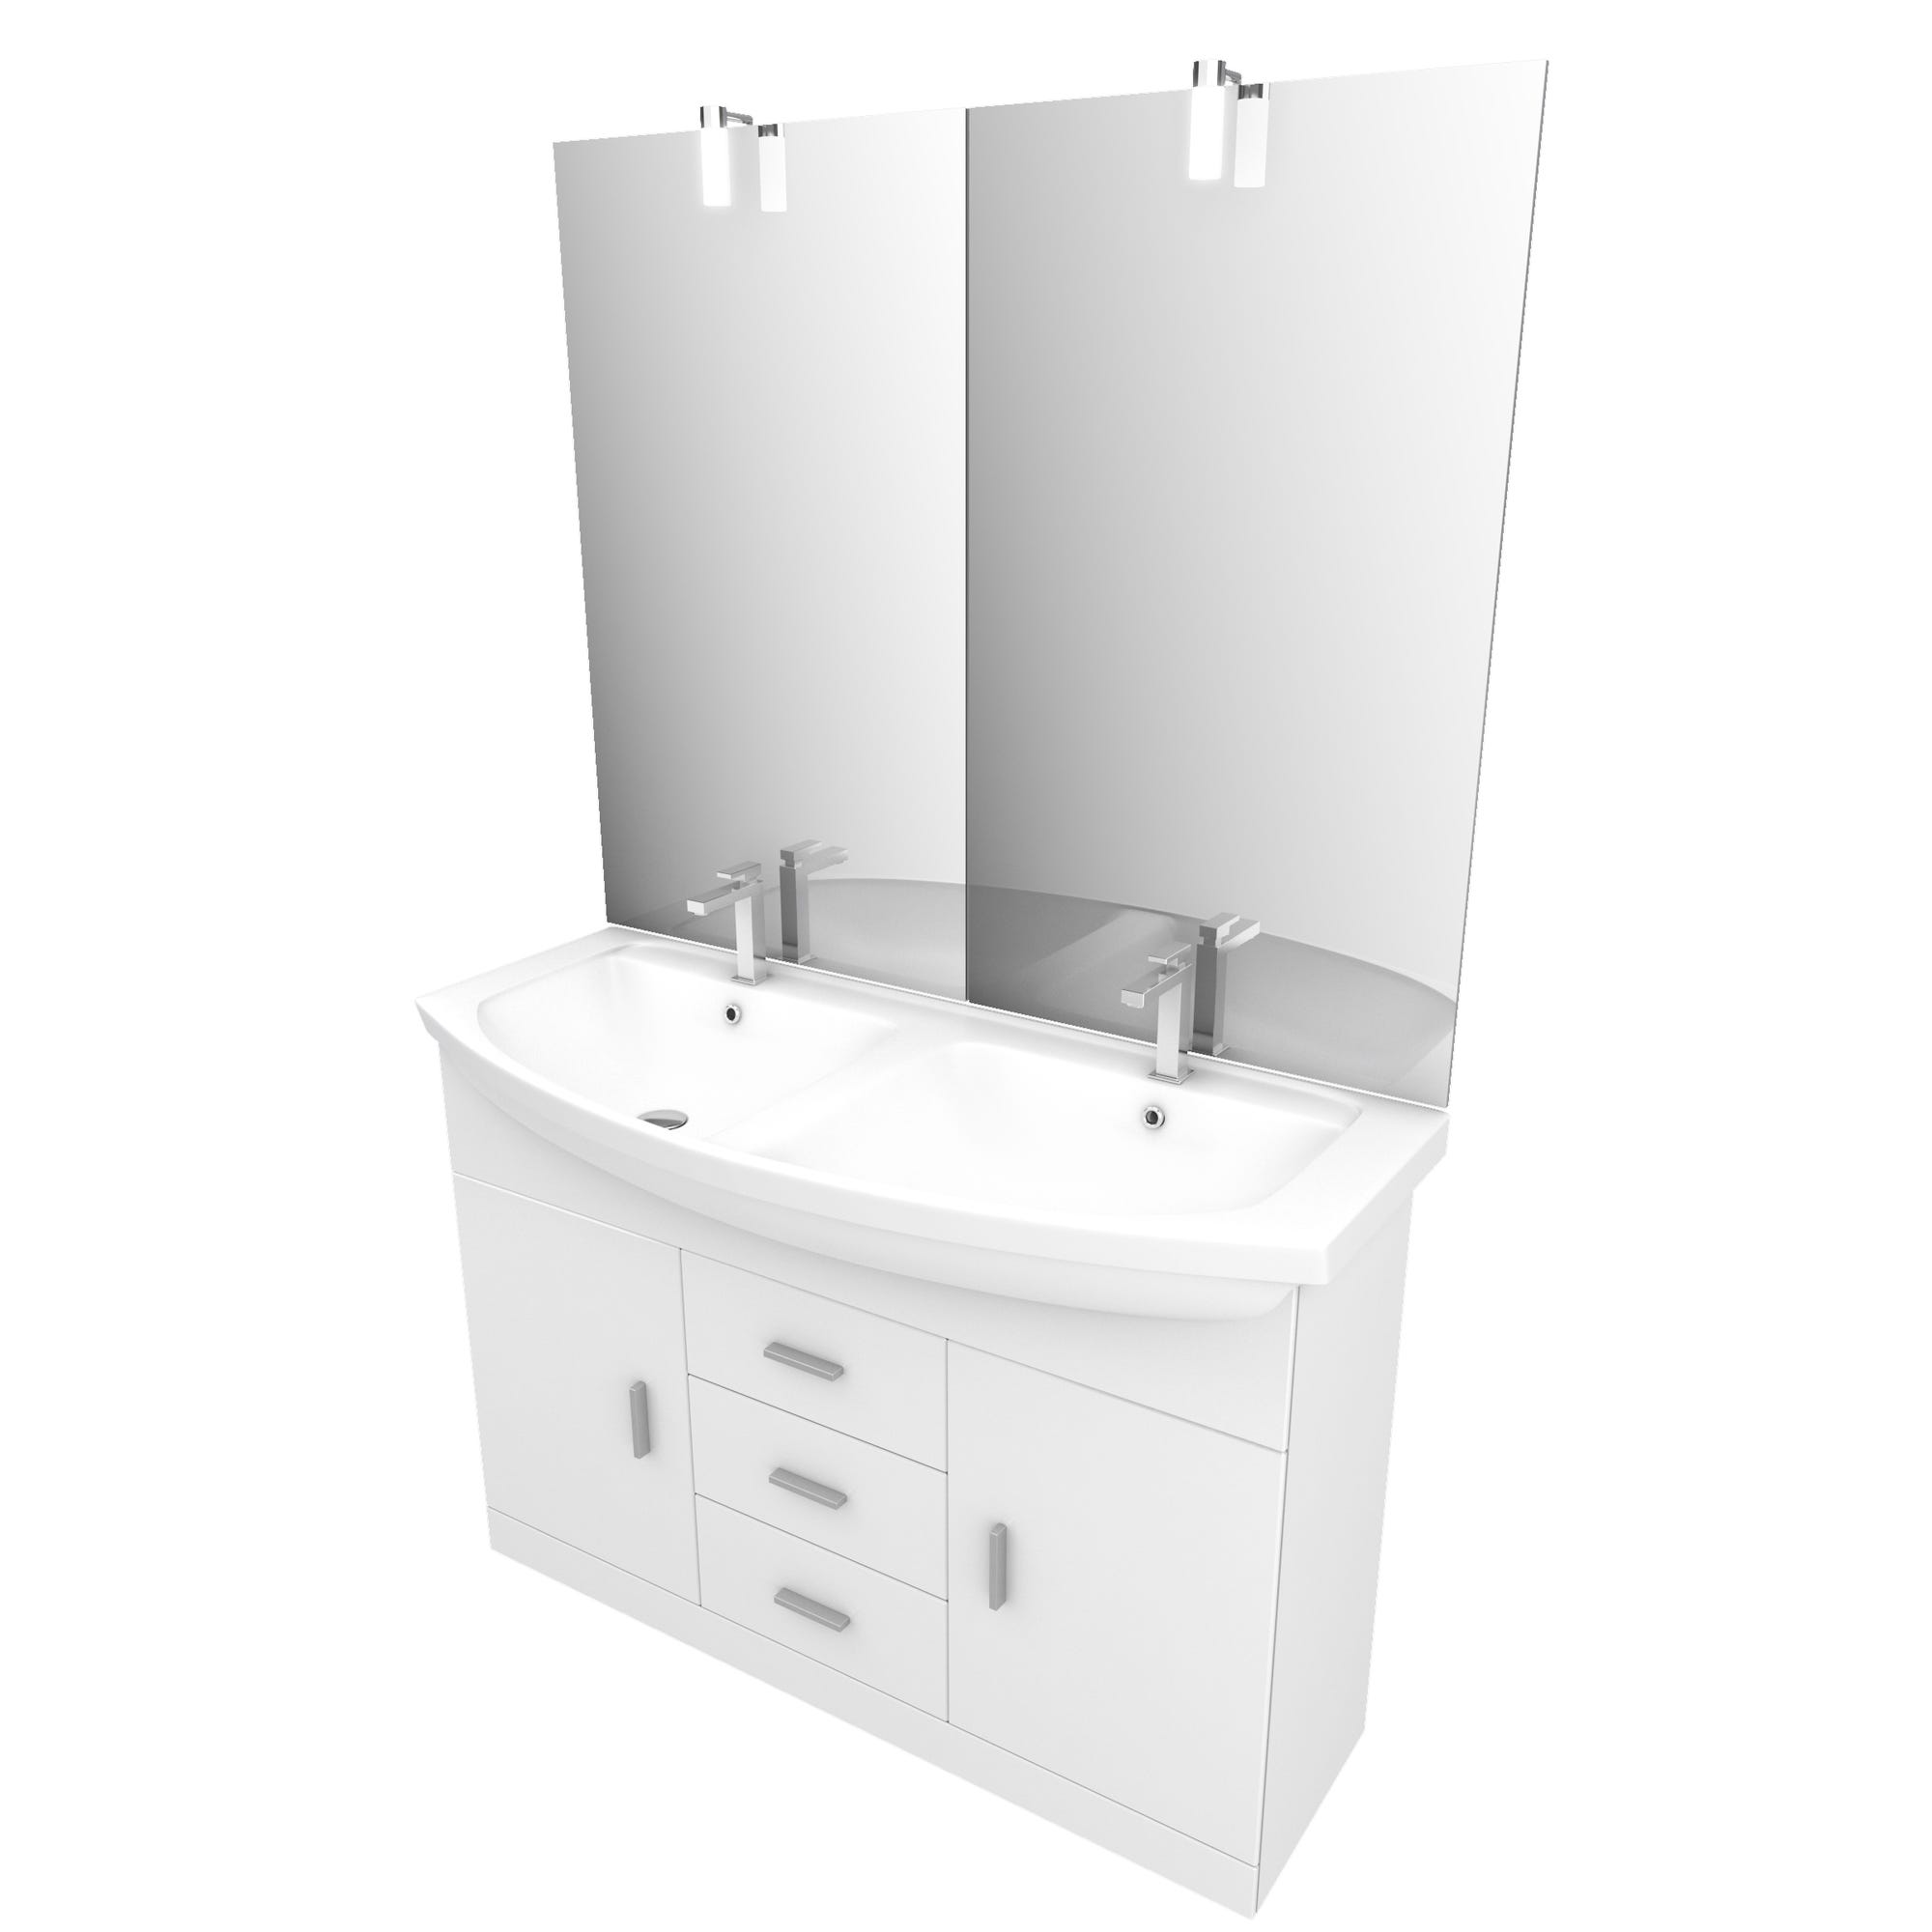 Meuble de salle de bain blanc double vasque 120cm sur pied + vasque ceramique blanche + miroir led 2